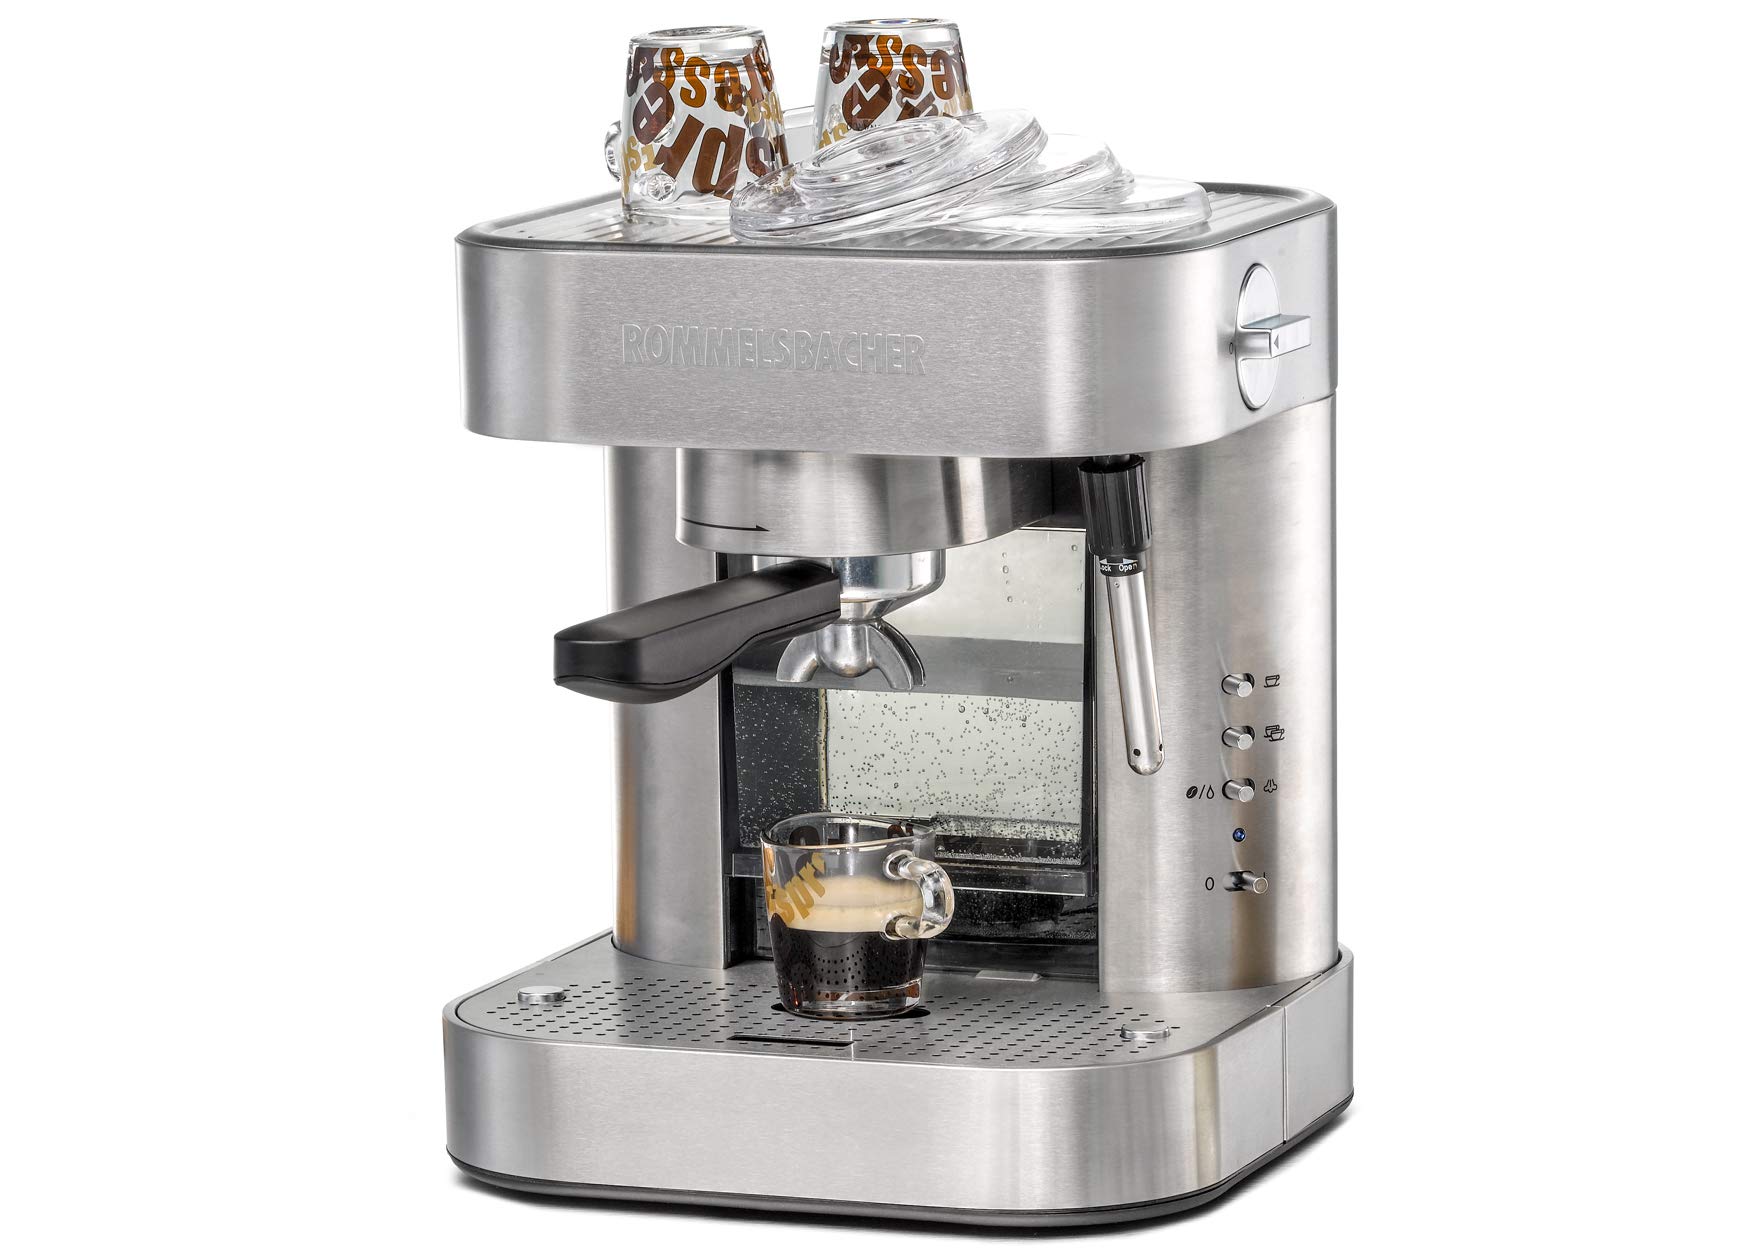 ROMMELSBACHER Espresso Maschine EKS 2010 - Siebträger, Filtereinsatz für 1 bzw. 2 Tassen, Vorbrühfunktion, 19 Bar Pumpendruck, Düse für Milchschaum/Heißwasser, programmierbare Tassenfüllmenge